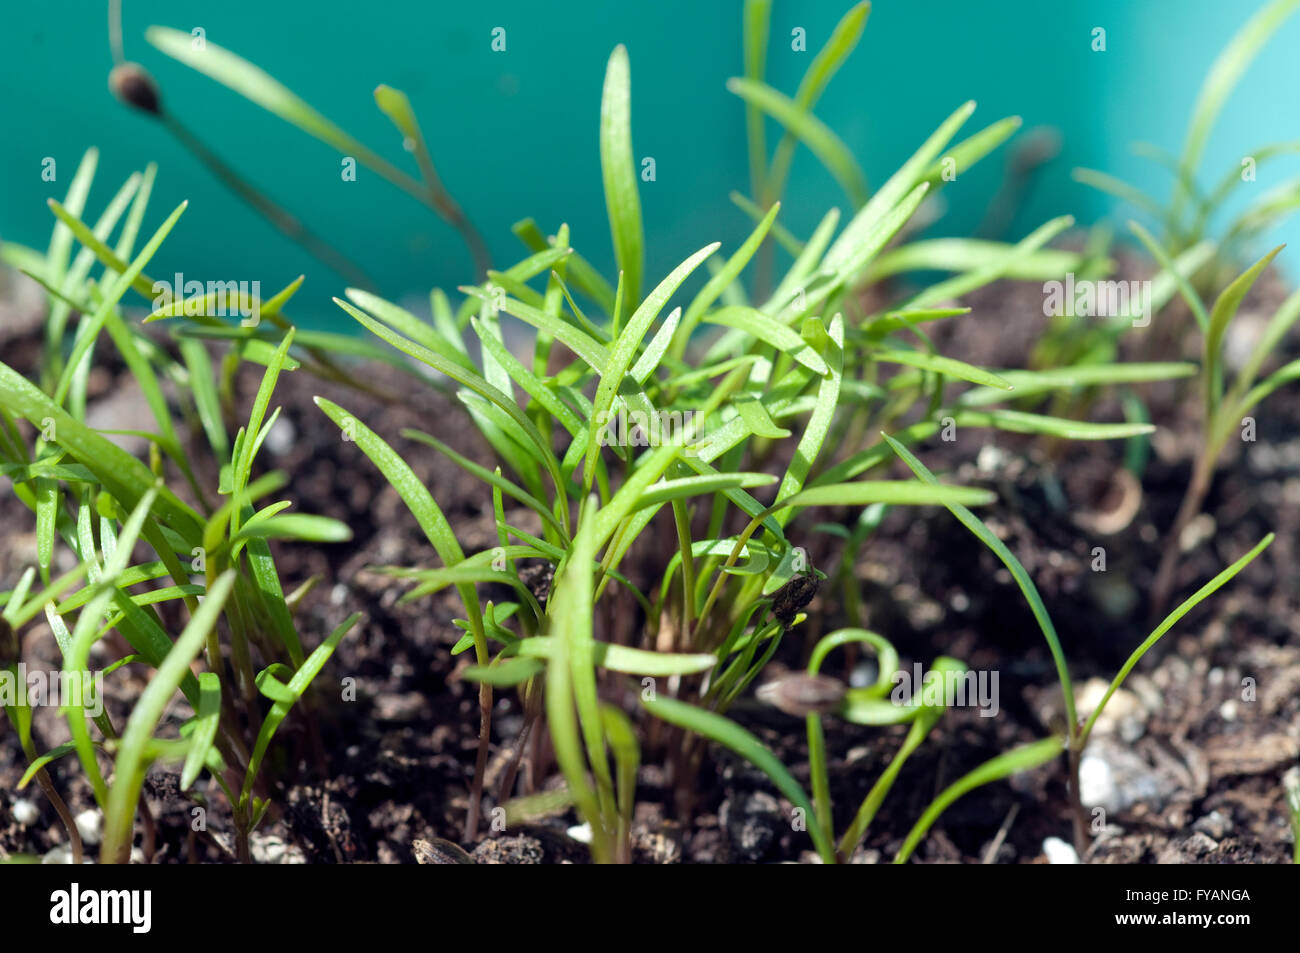 Eneldo; Anethum ist eine Kraeuterpflanze Kuechenkraeuterpflanze Gewuerzpflanze,,,,, Duftpflanze heipflanze Kuechengewuerz Foto de stock